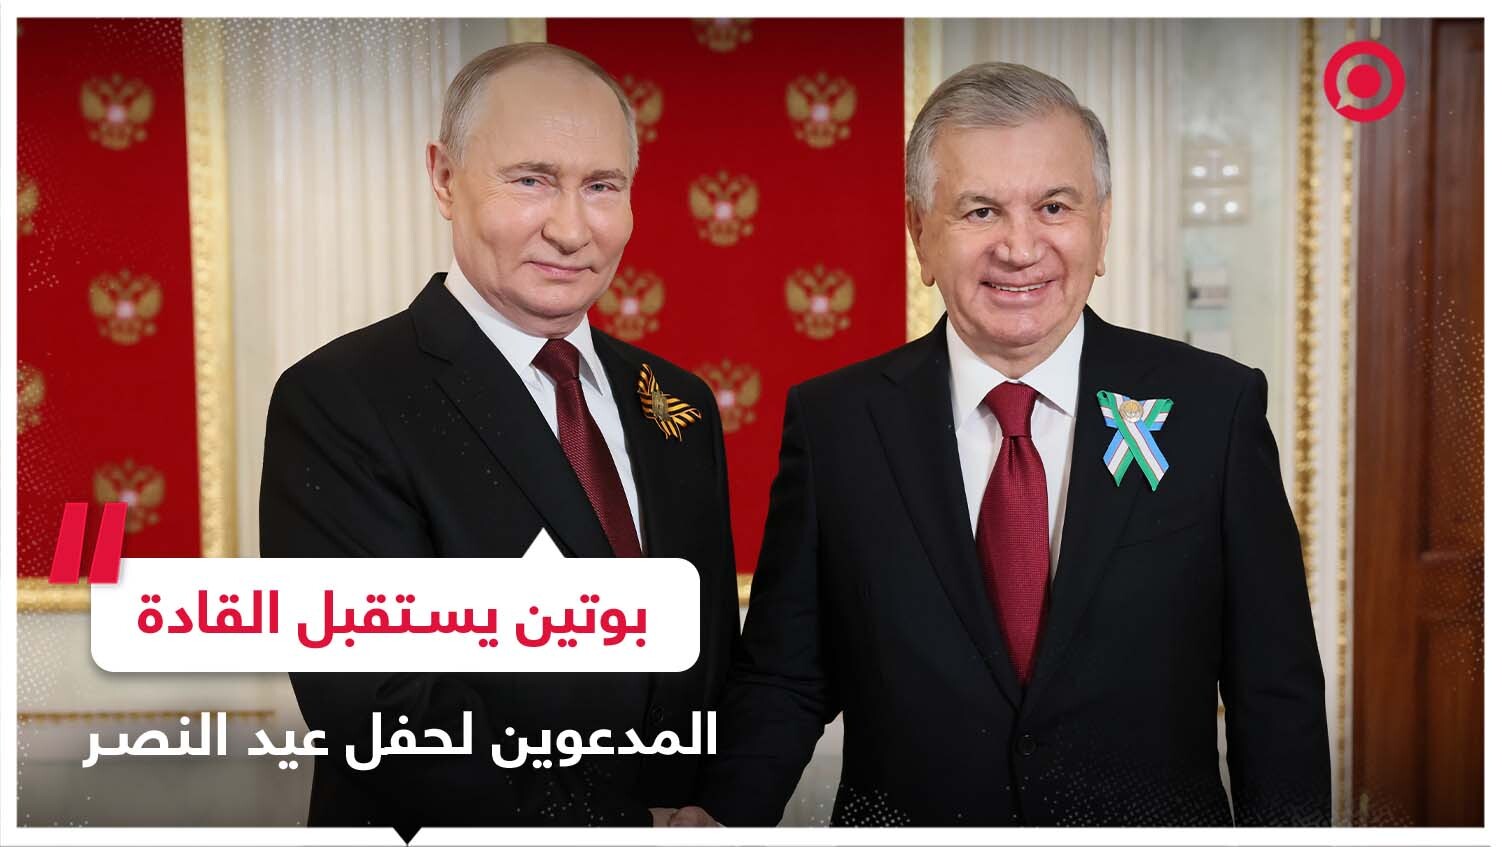 الرئيس الروسي يستقبل المدعوين لحفل عيد النصر في الساحة الحمراء